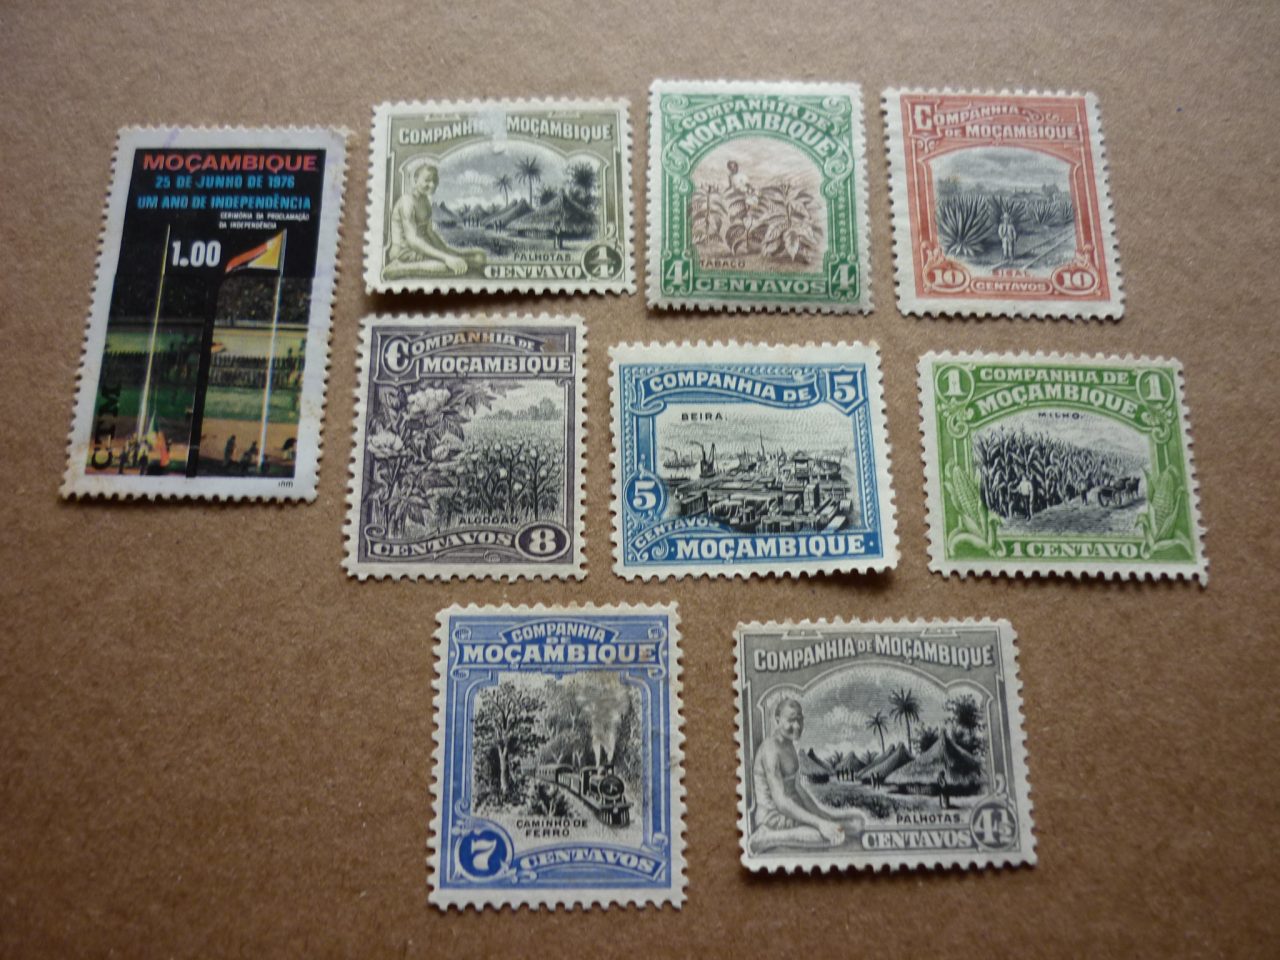 selos mocambique 025 scaled Casa do Colecionador